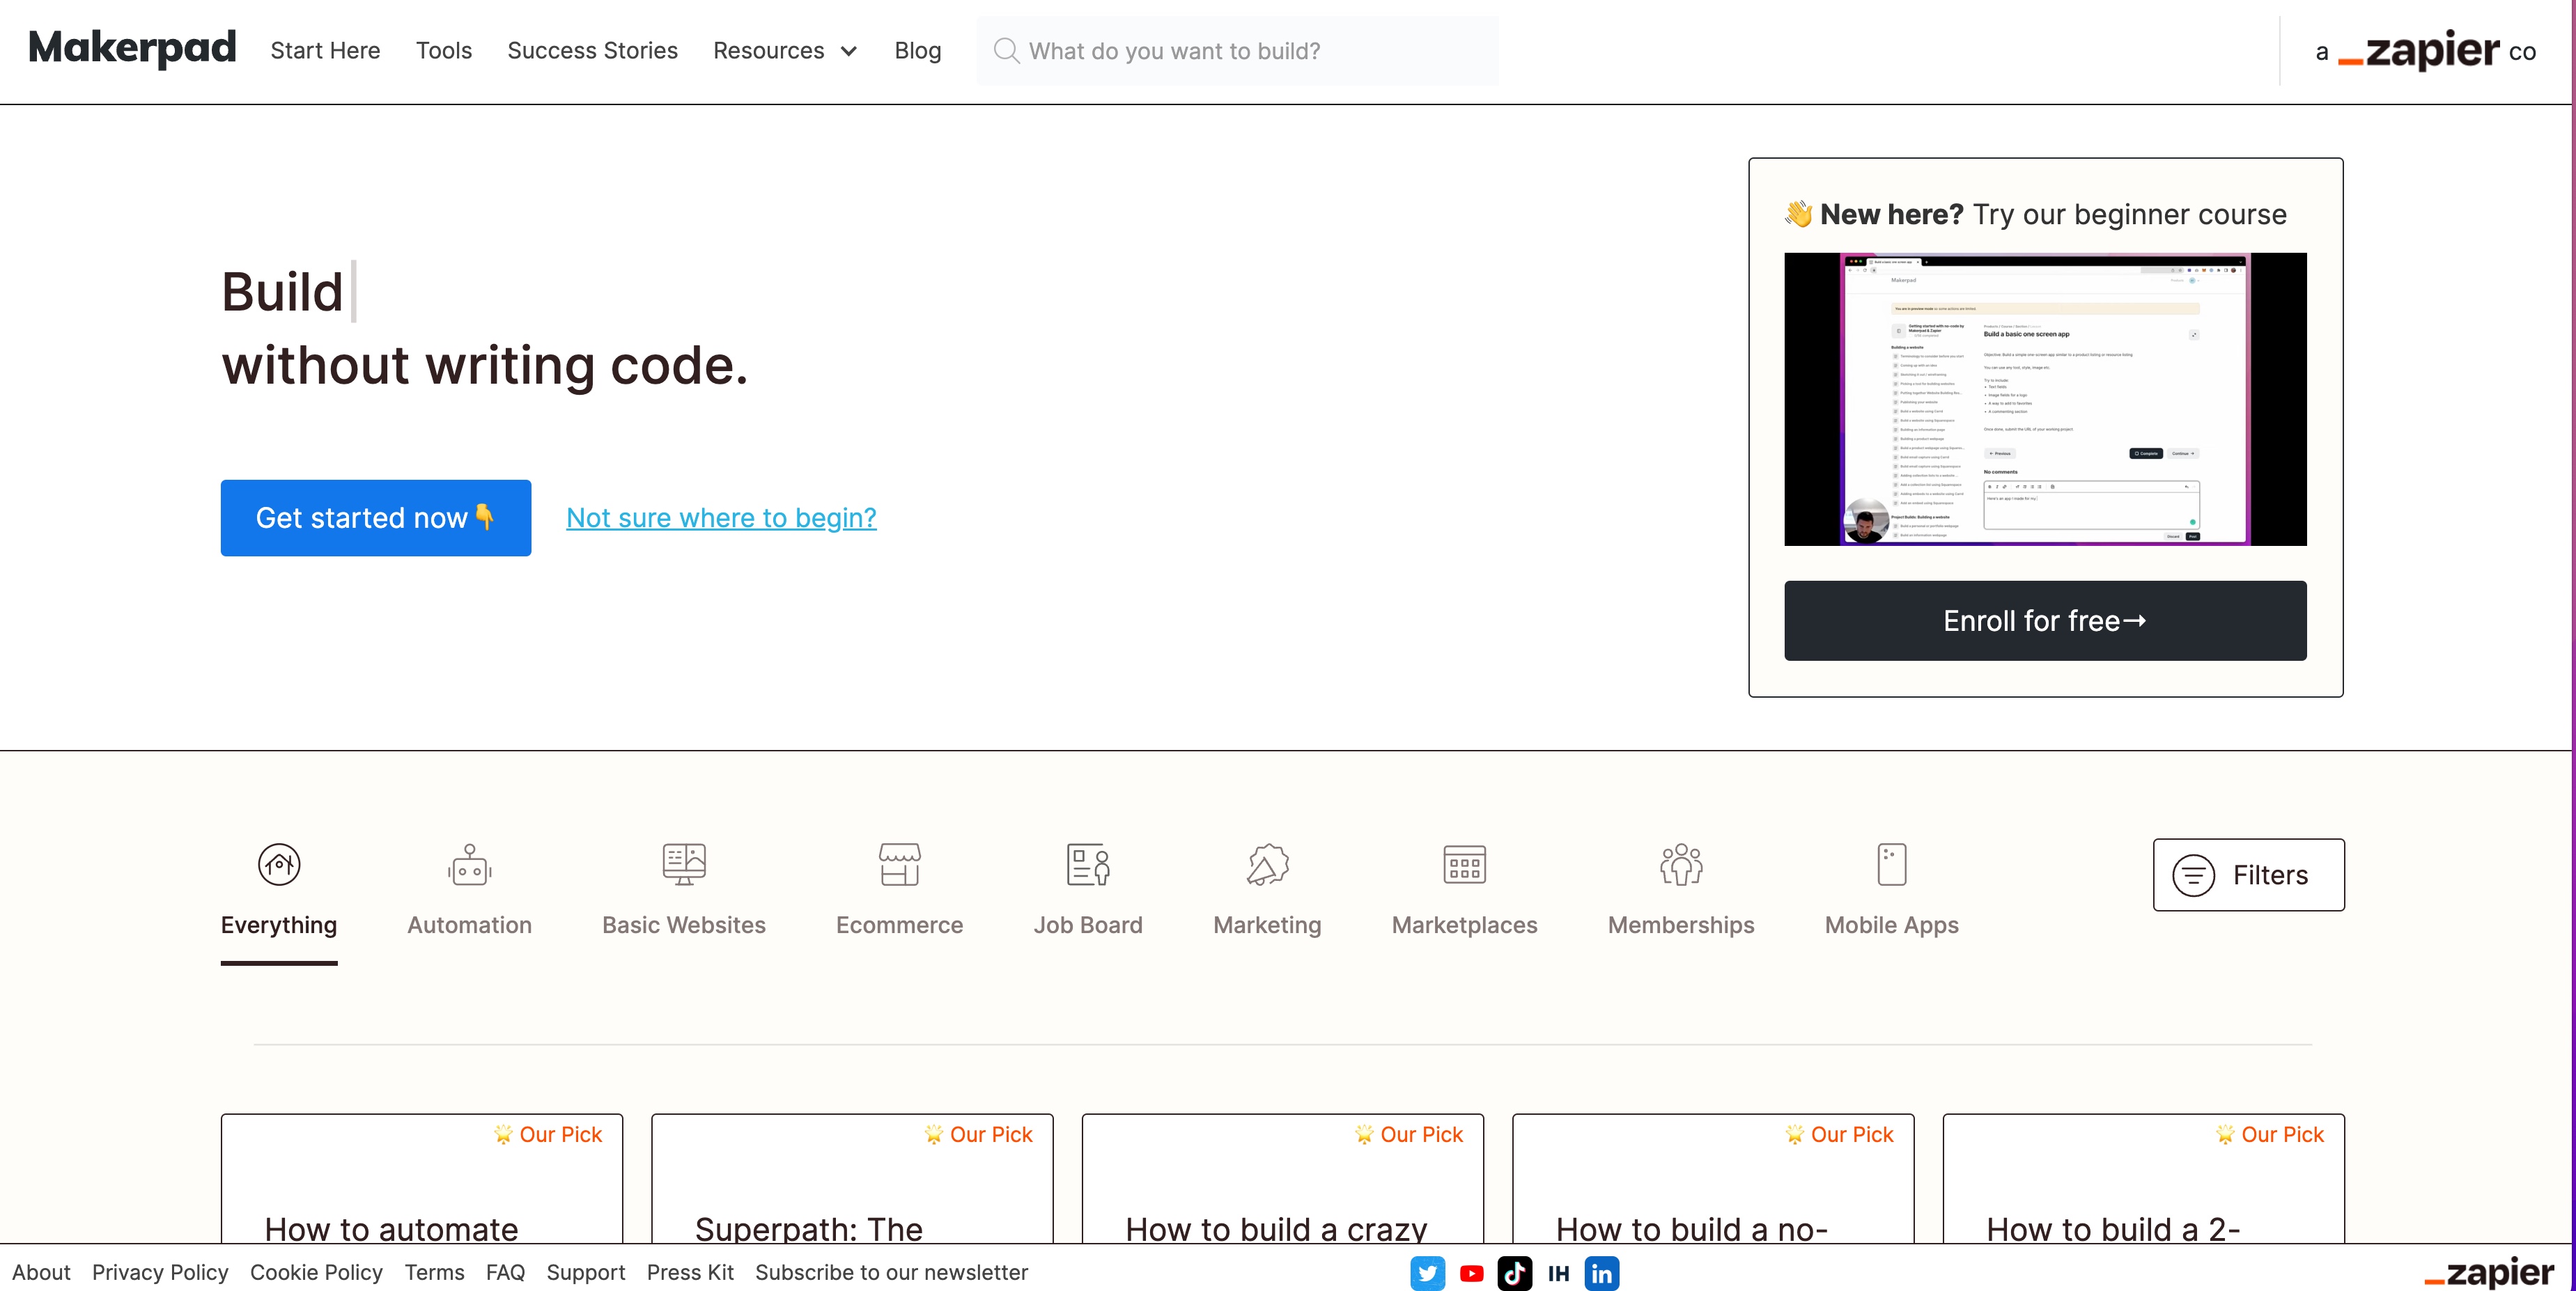 Page d'accueil de Makerpad. Fond blanc, titre en texte noir : Créez [vide] sans écrire de code à côté de la vidéo intitulée "Nouveau ici ? Essayez notre cours pour débutants"